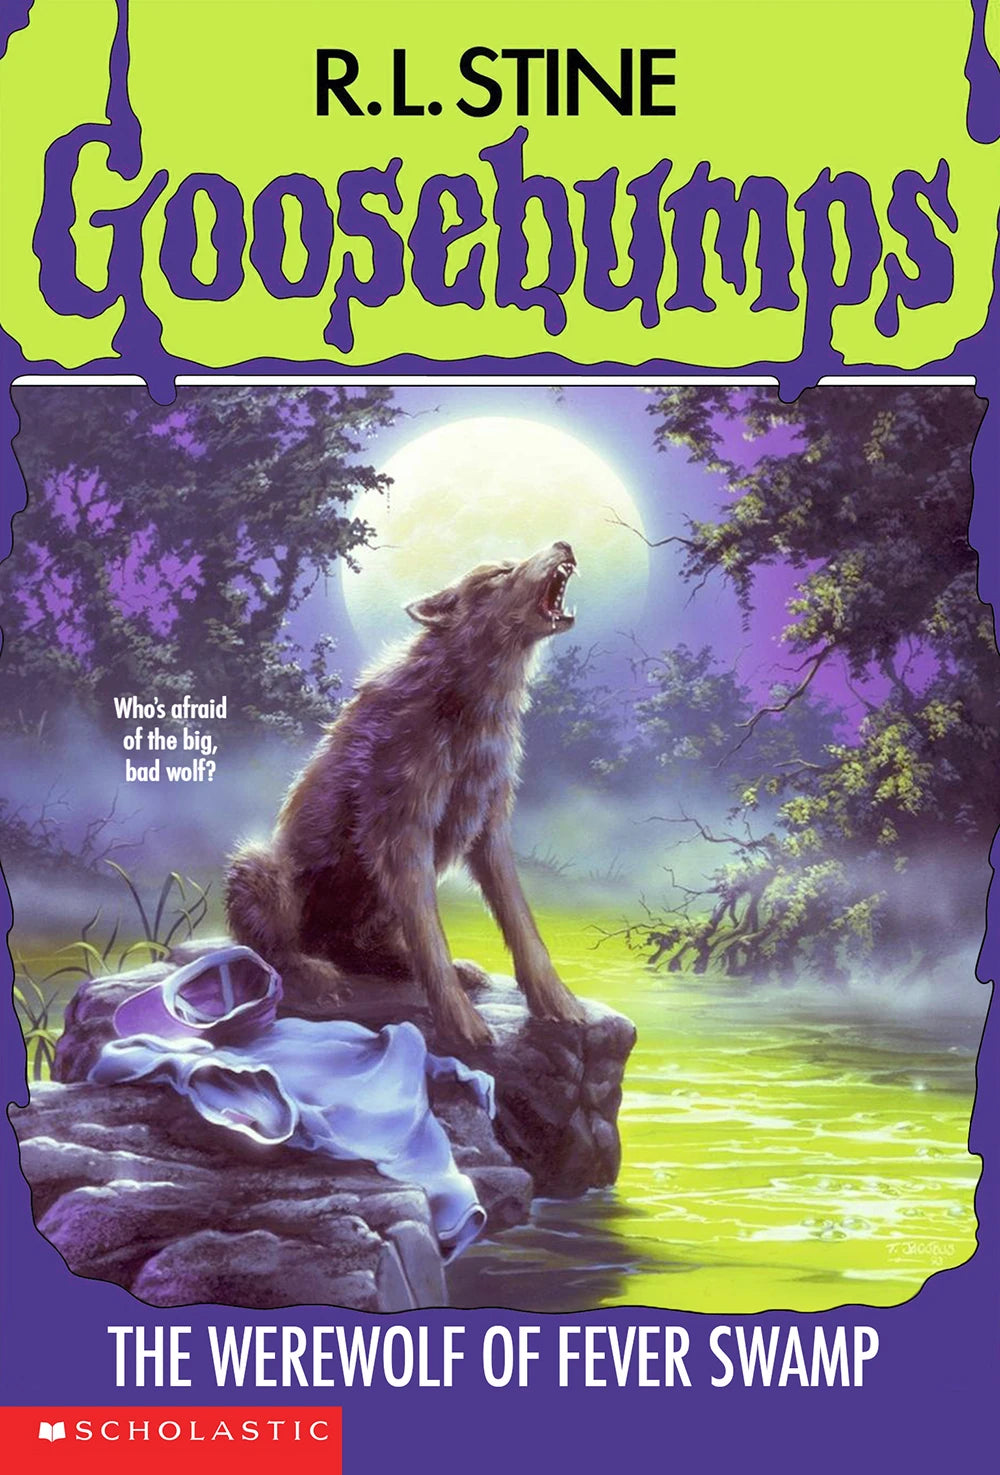 Livro The Werewolf of Fever Swamp (USA PRINT 1993) (Goosebumps #14) R.L. Stine - usado